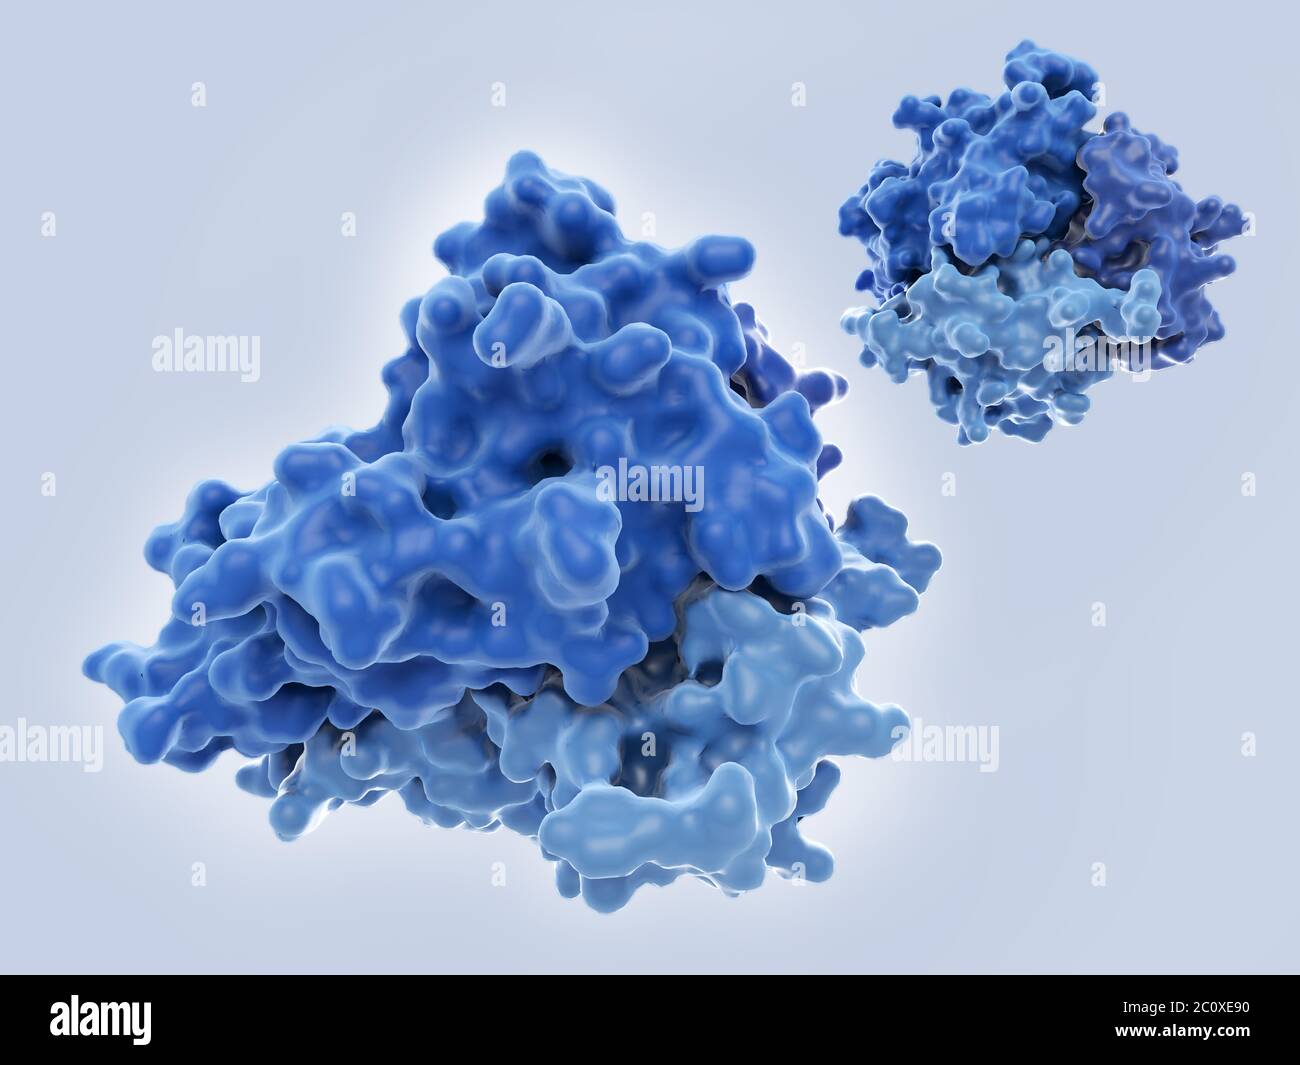 Tumornekrose-Faktor-Alpha (TNF-alpha), molekulares Modell. Dieses Protein existiert in der Regel als Trimer (ein Molekül, das aus 3 identischen kleineren Molekülen besteht). Es wird von weißen Blutkörperchen, meist Makrophagen, während entzündlichen Immunantworten freigesetzt und wirkt als Signalmolekül. Seine Freisetzung wird durch Verletzungen oder bakterielle Endotoxine ausgelöst. Eine ihrer Aktionen ist es, Tumorzellen zu töten, daher sein Name. TNF-alpha ist auch an einer Reihe von entzündlichen Erkrankungen beteiligt, darunter rheumatoide Arthritis, Psoriasis und Morbus Crohn. Stockfoto